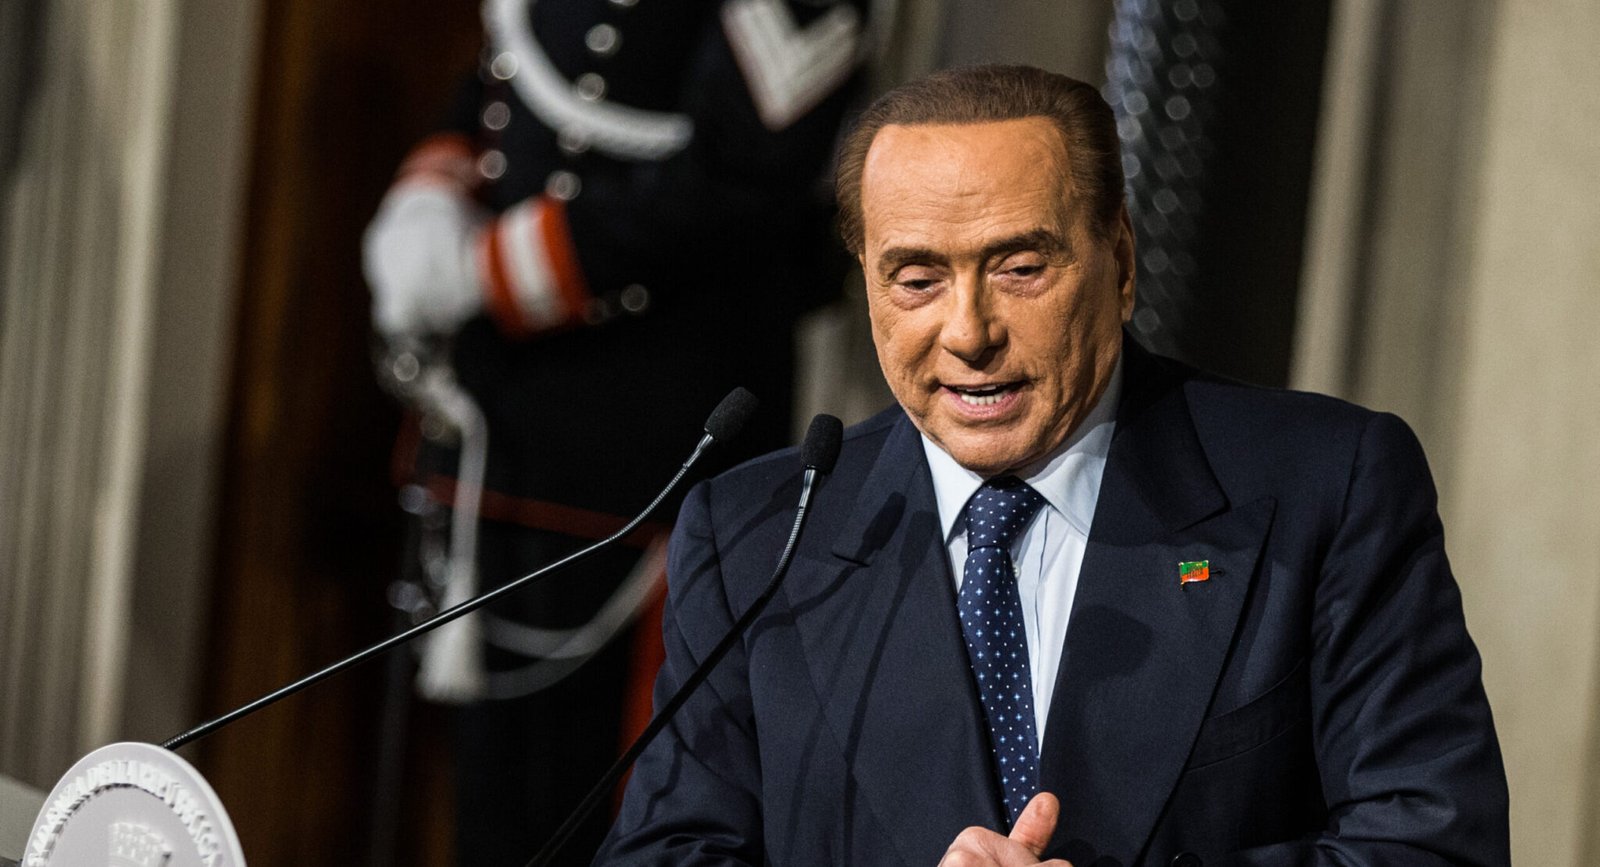 Forza Italia party leader and former Italian Prime Minister Silvio Berlusconi